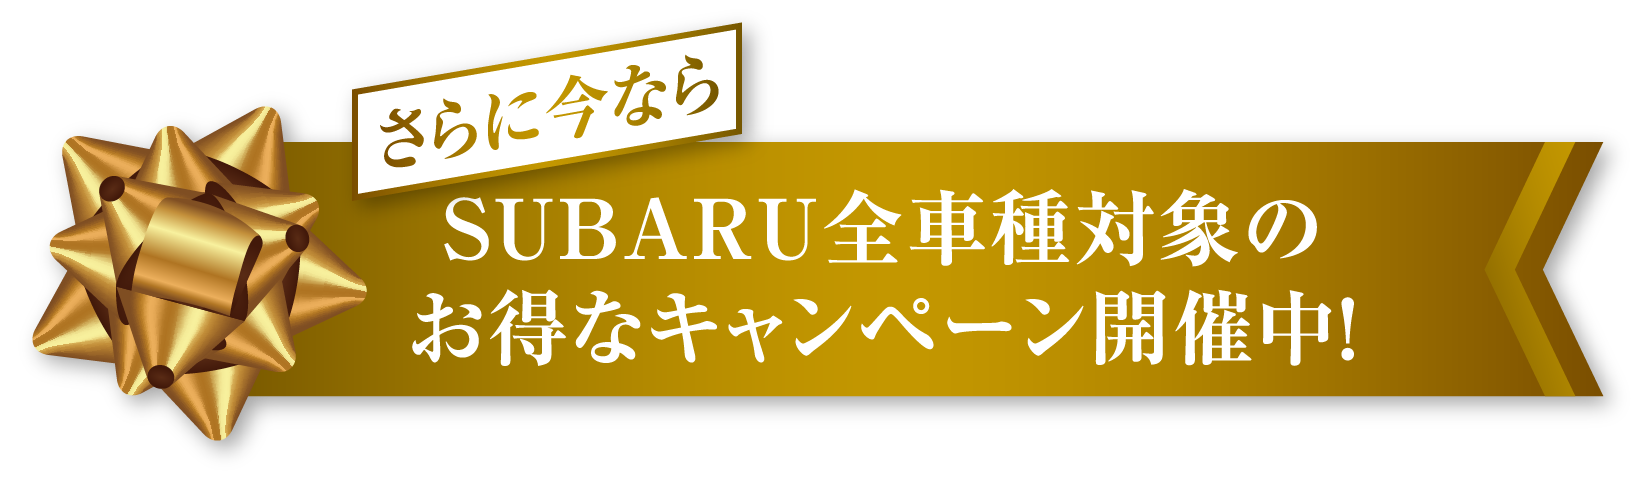 さらに今ならSUBARU全車種対象のお得なキャンペーン開催中！